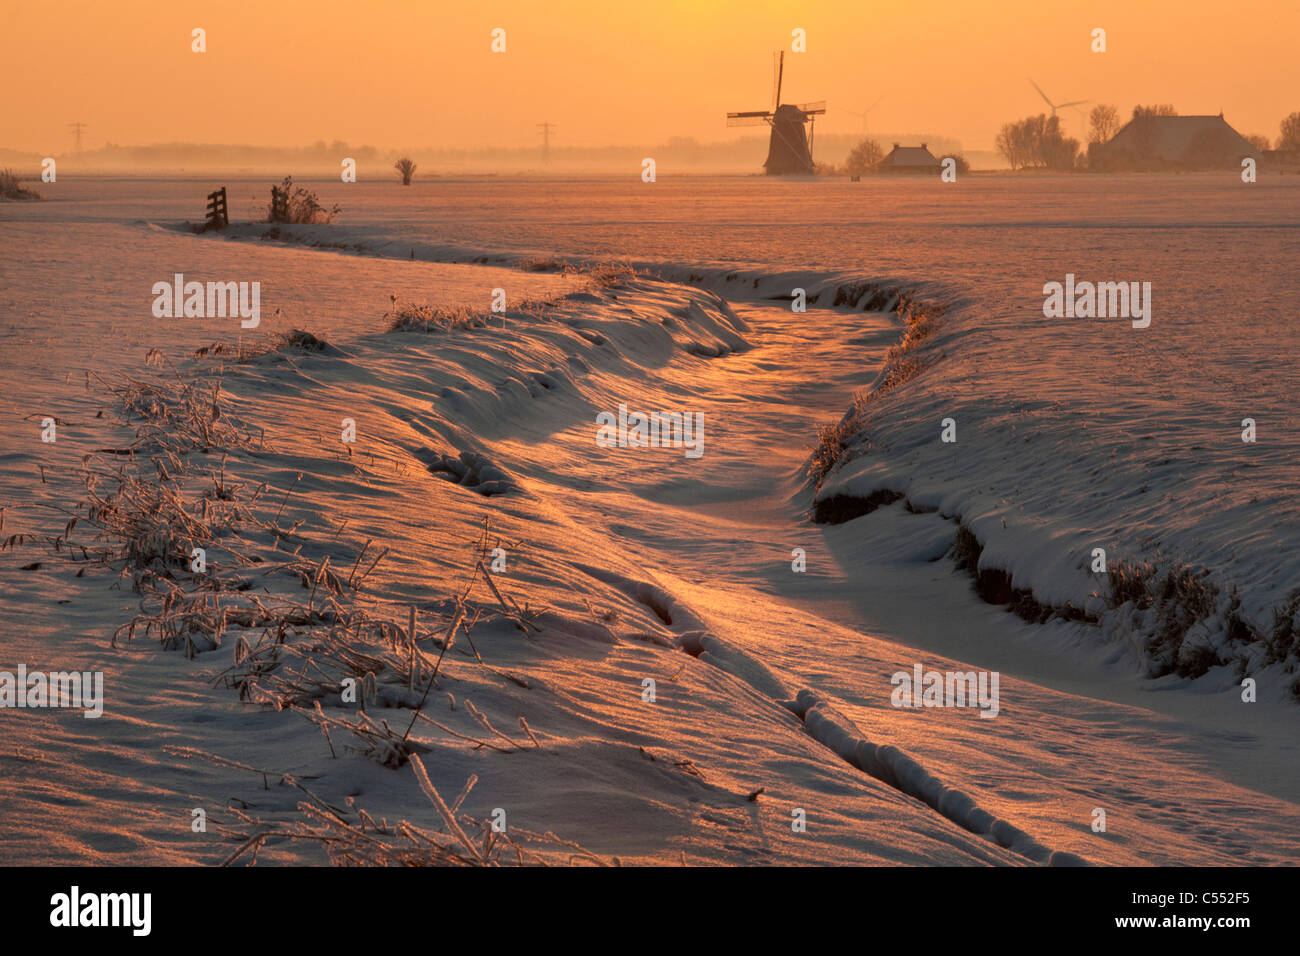 Los Países Bajos, Lollum, Molino y arroyo congelado en la nieve al atardecer. Foto de stock